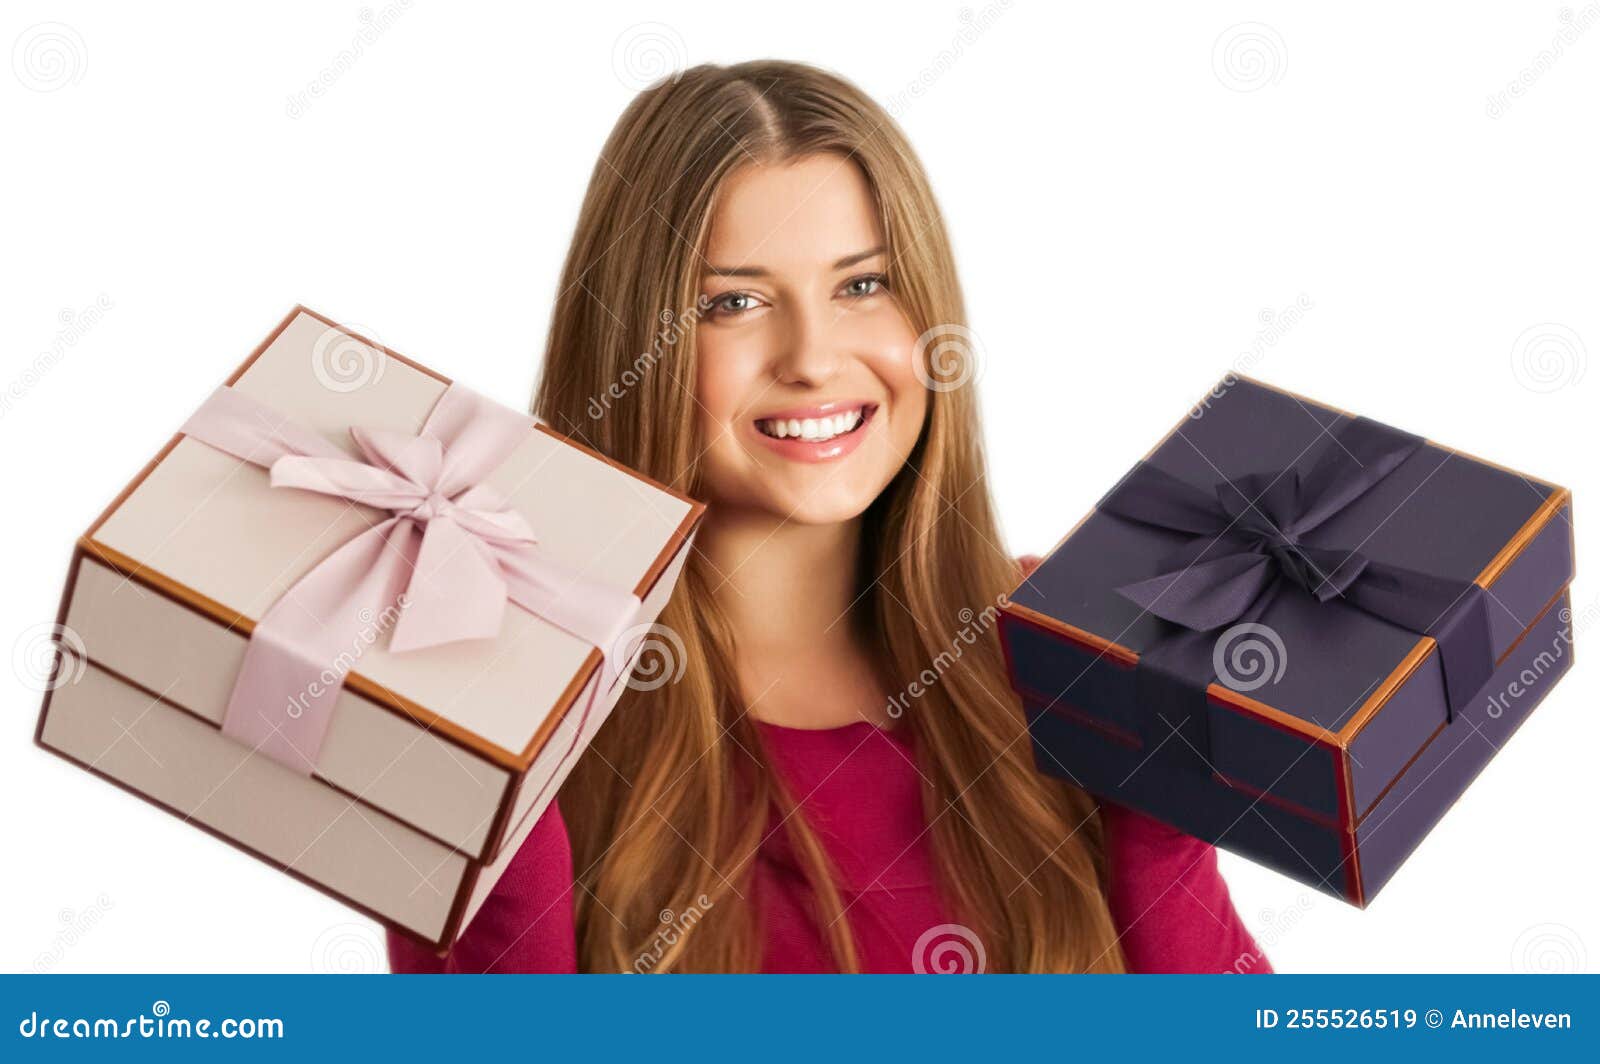 Regalos De Navidad O Regalo De Cumpleaños Mujer Feliz Sosteniendo Cajas De  Regalo Sobre Fondo Blanco Imagen de archivo - Imagen de feliz, hembra:  255526519